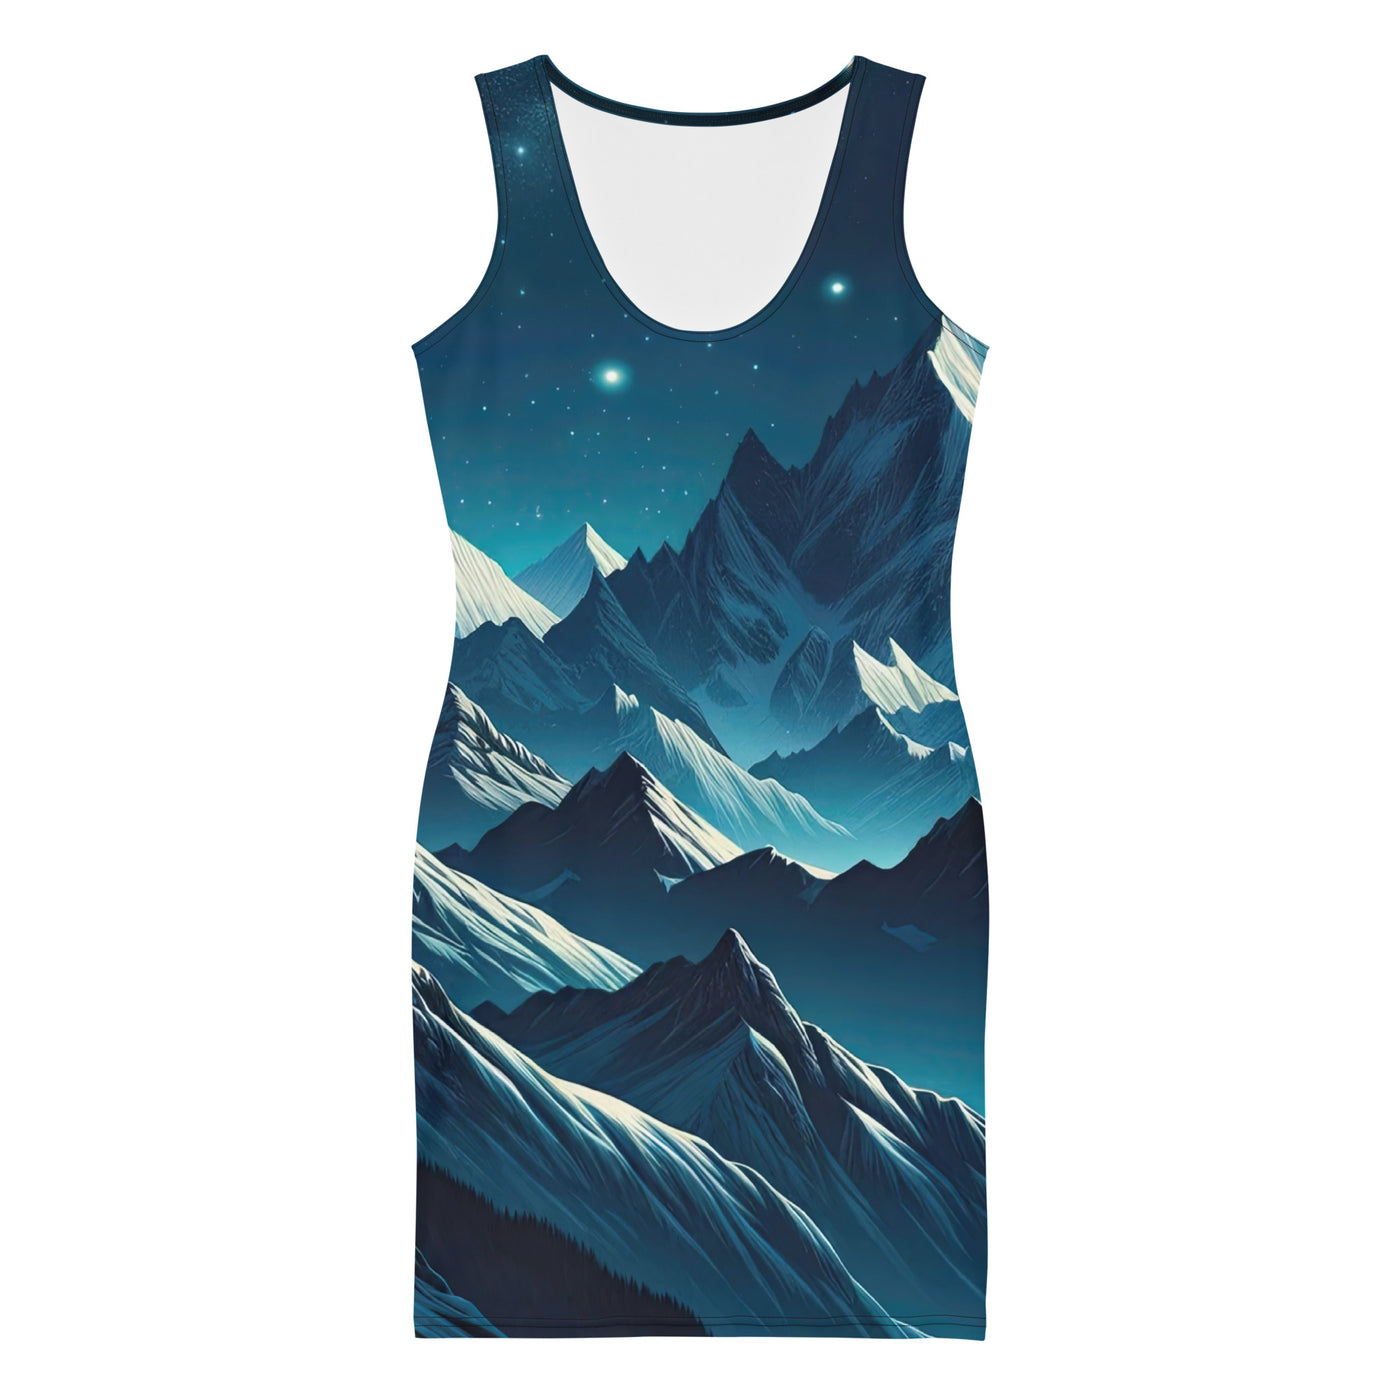 Sternenklare Nacht über den Alpen, Vollmondschein auf Schneegipfeln - Langes Damen Kleid (All-Over Print) berge xxx yyy zzz XL